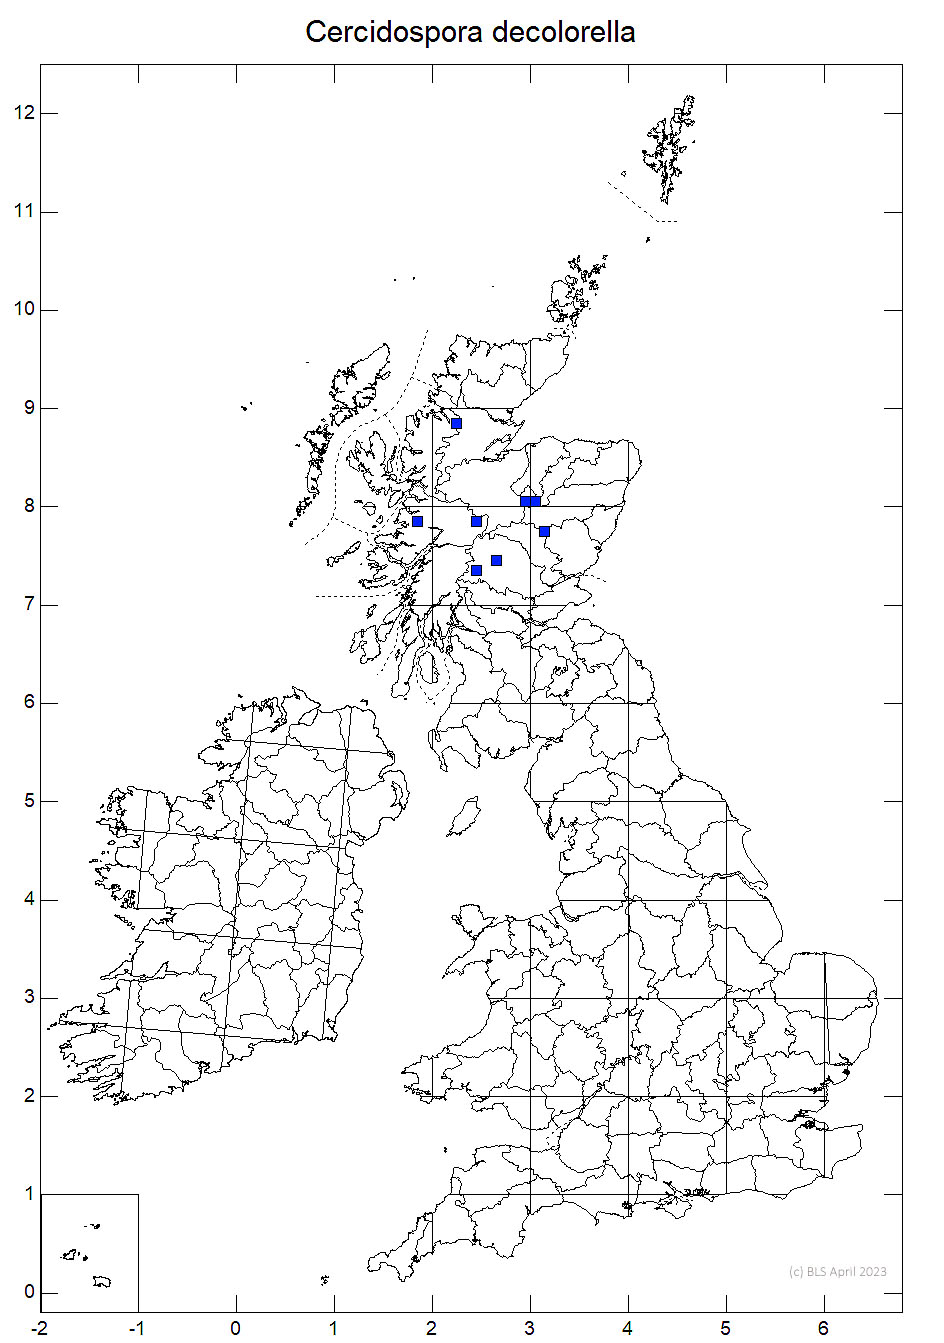 Cercidospora decolorella 10km sq distribution map